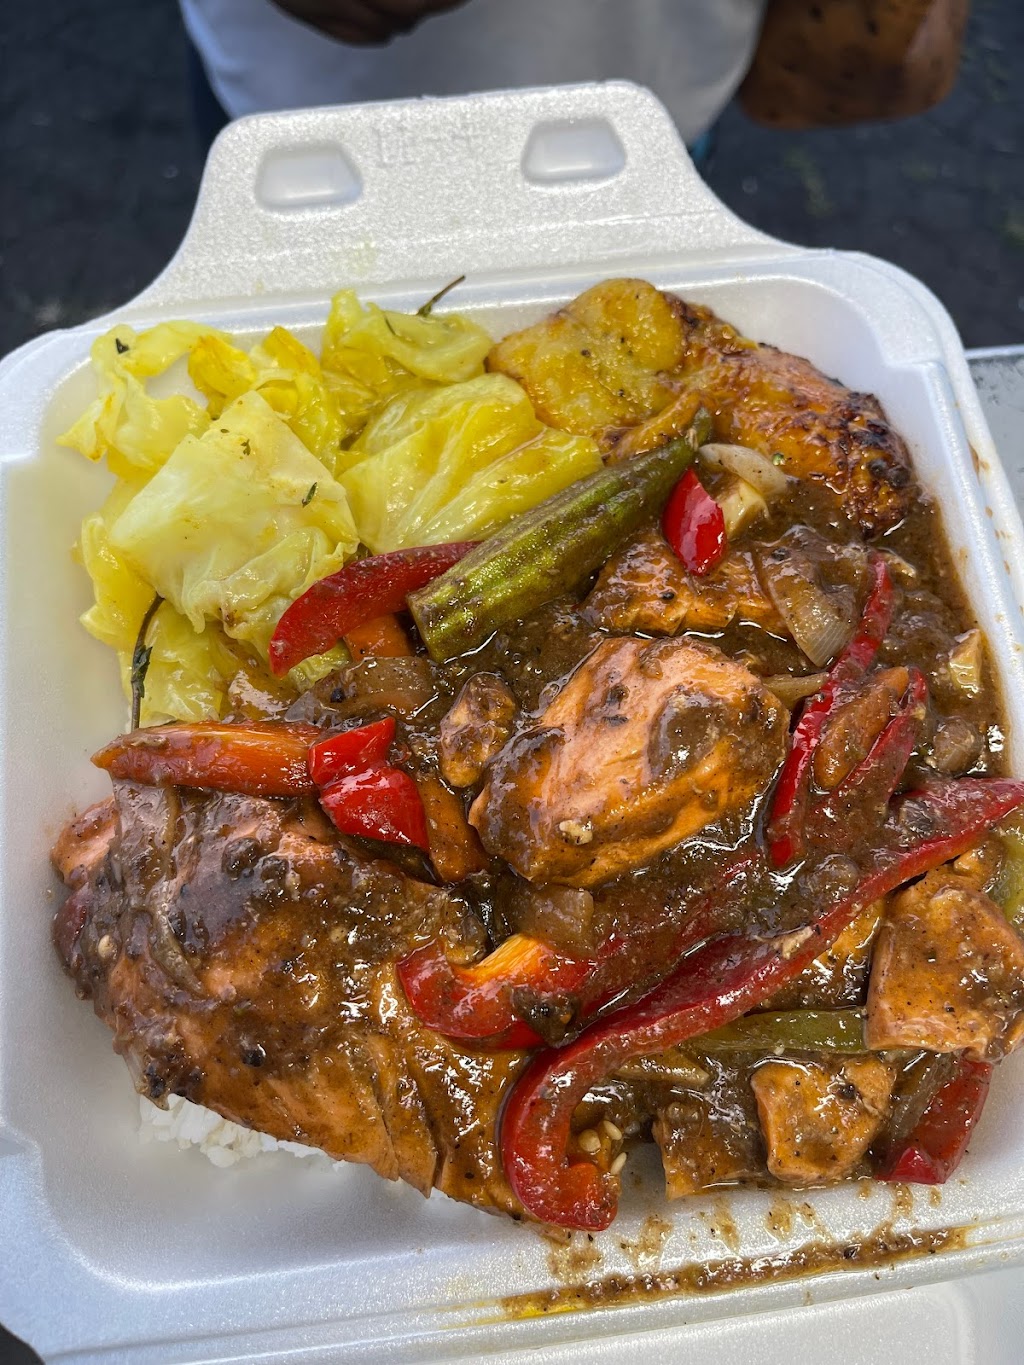 Yawdis Jamaican cuisine | 202 S Broad St R, Meriden, CT 06450 | Phone: (203) 718-6515